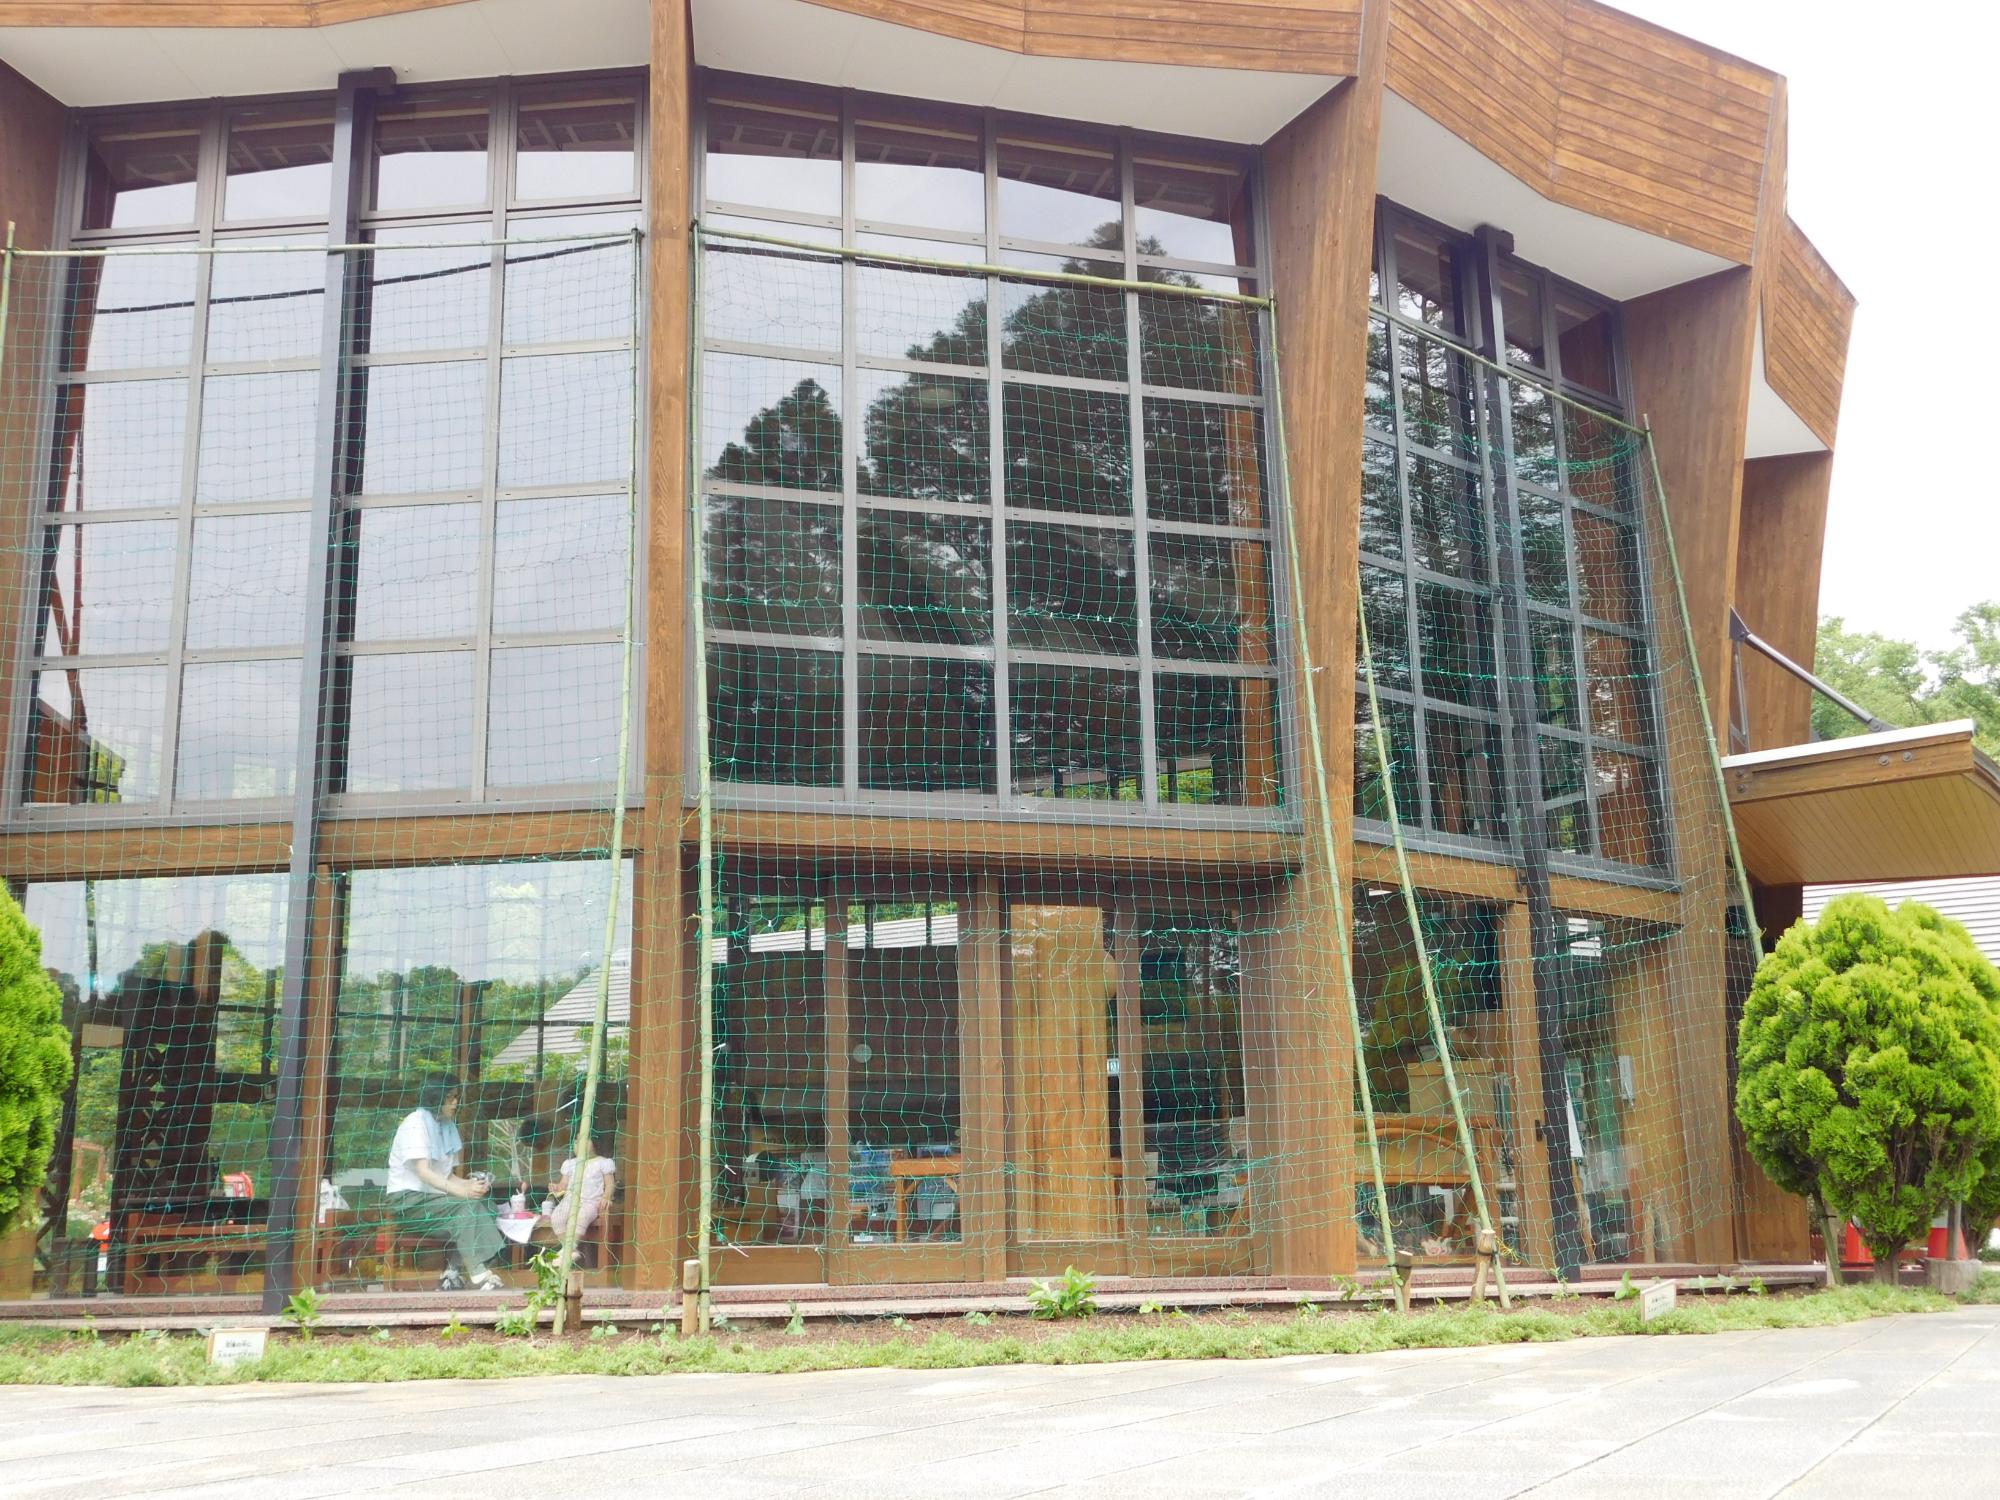 6/1このはな館建物の南側に、竹の枠とネットで「緑のカーテン」の準備をしました。